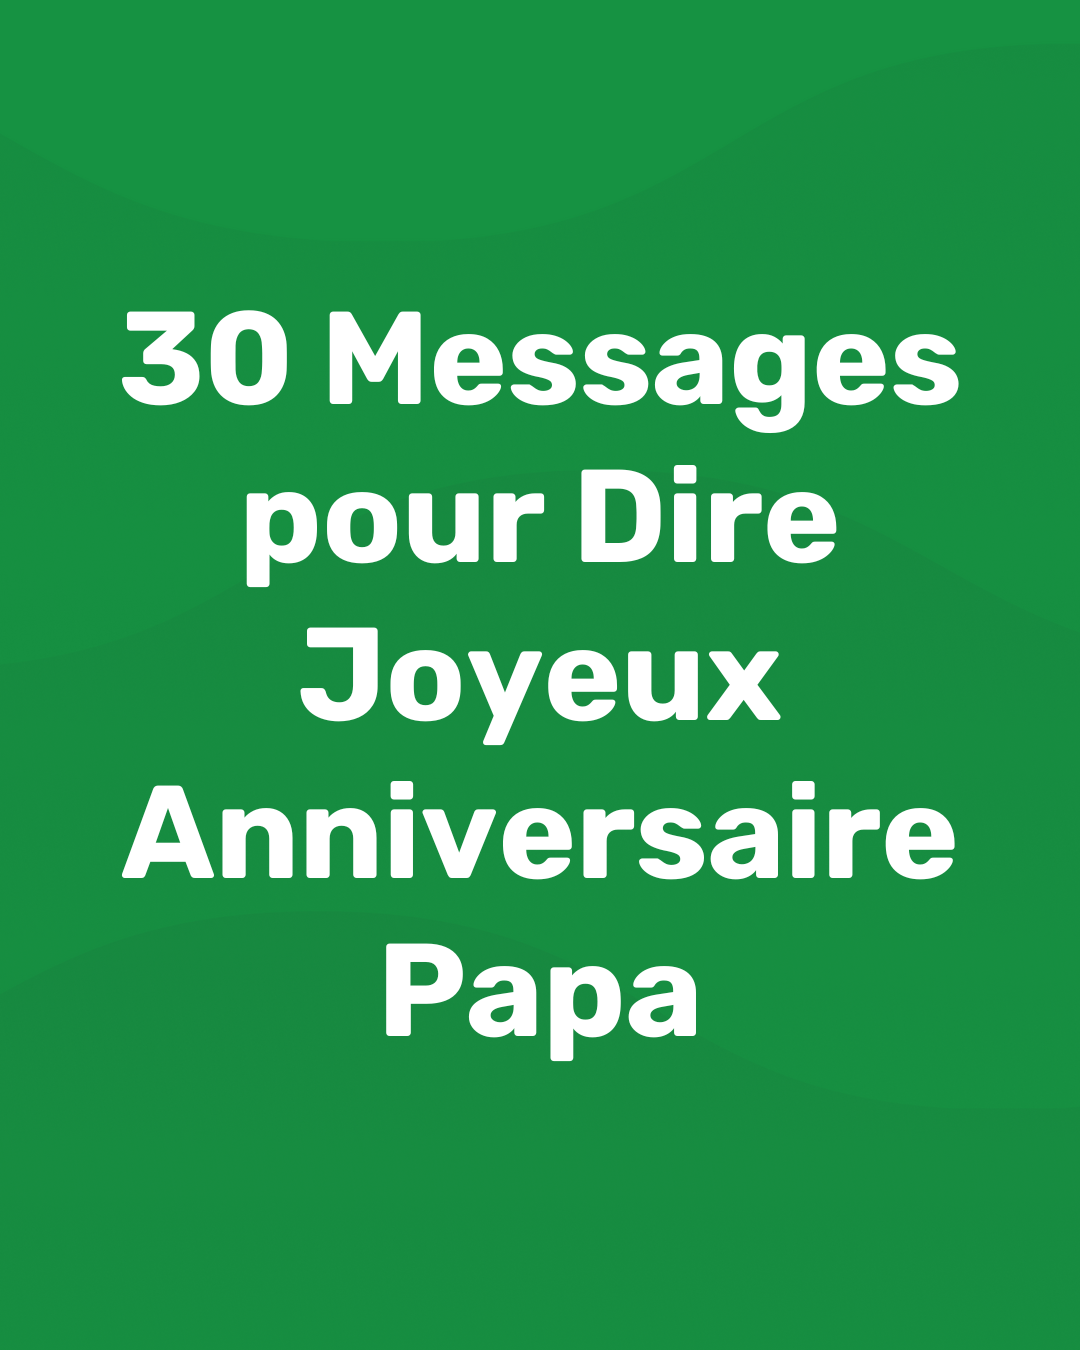 Joyeux Anniversaire Papa : 30 Messages pour son anniversaire - Blog - memmo